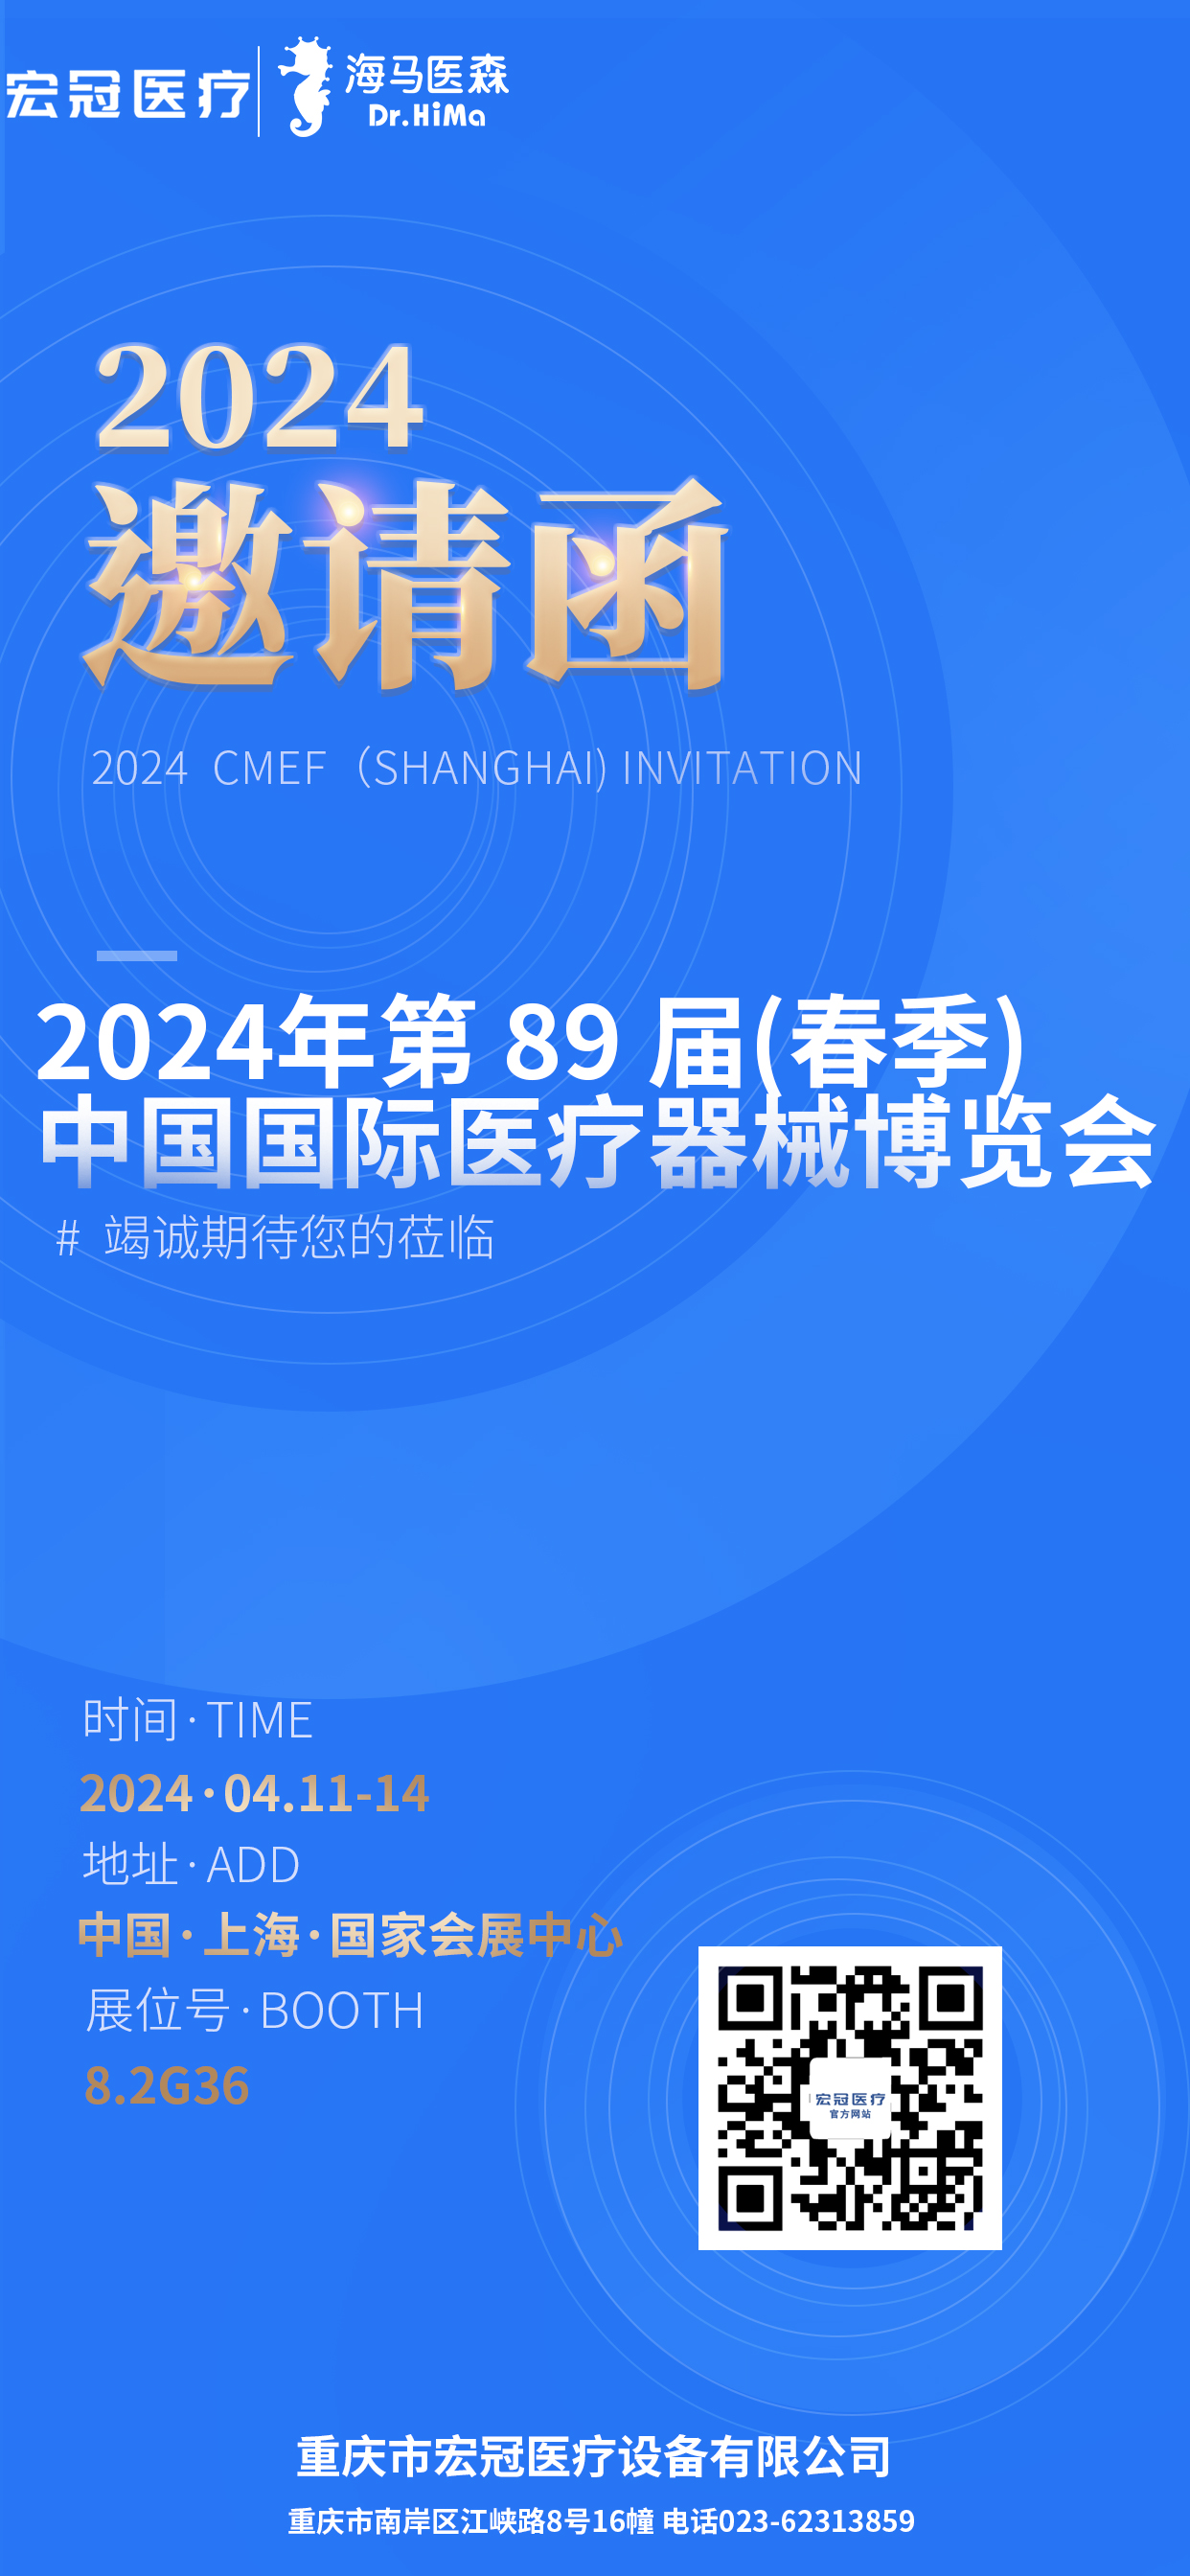 Utnoeging foar CMEF 2024 (Shanghai)